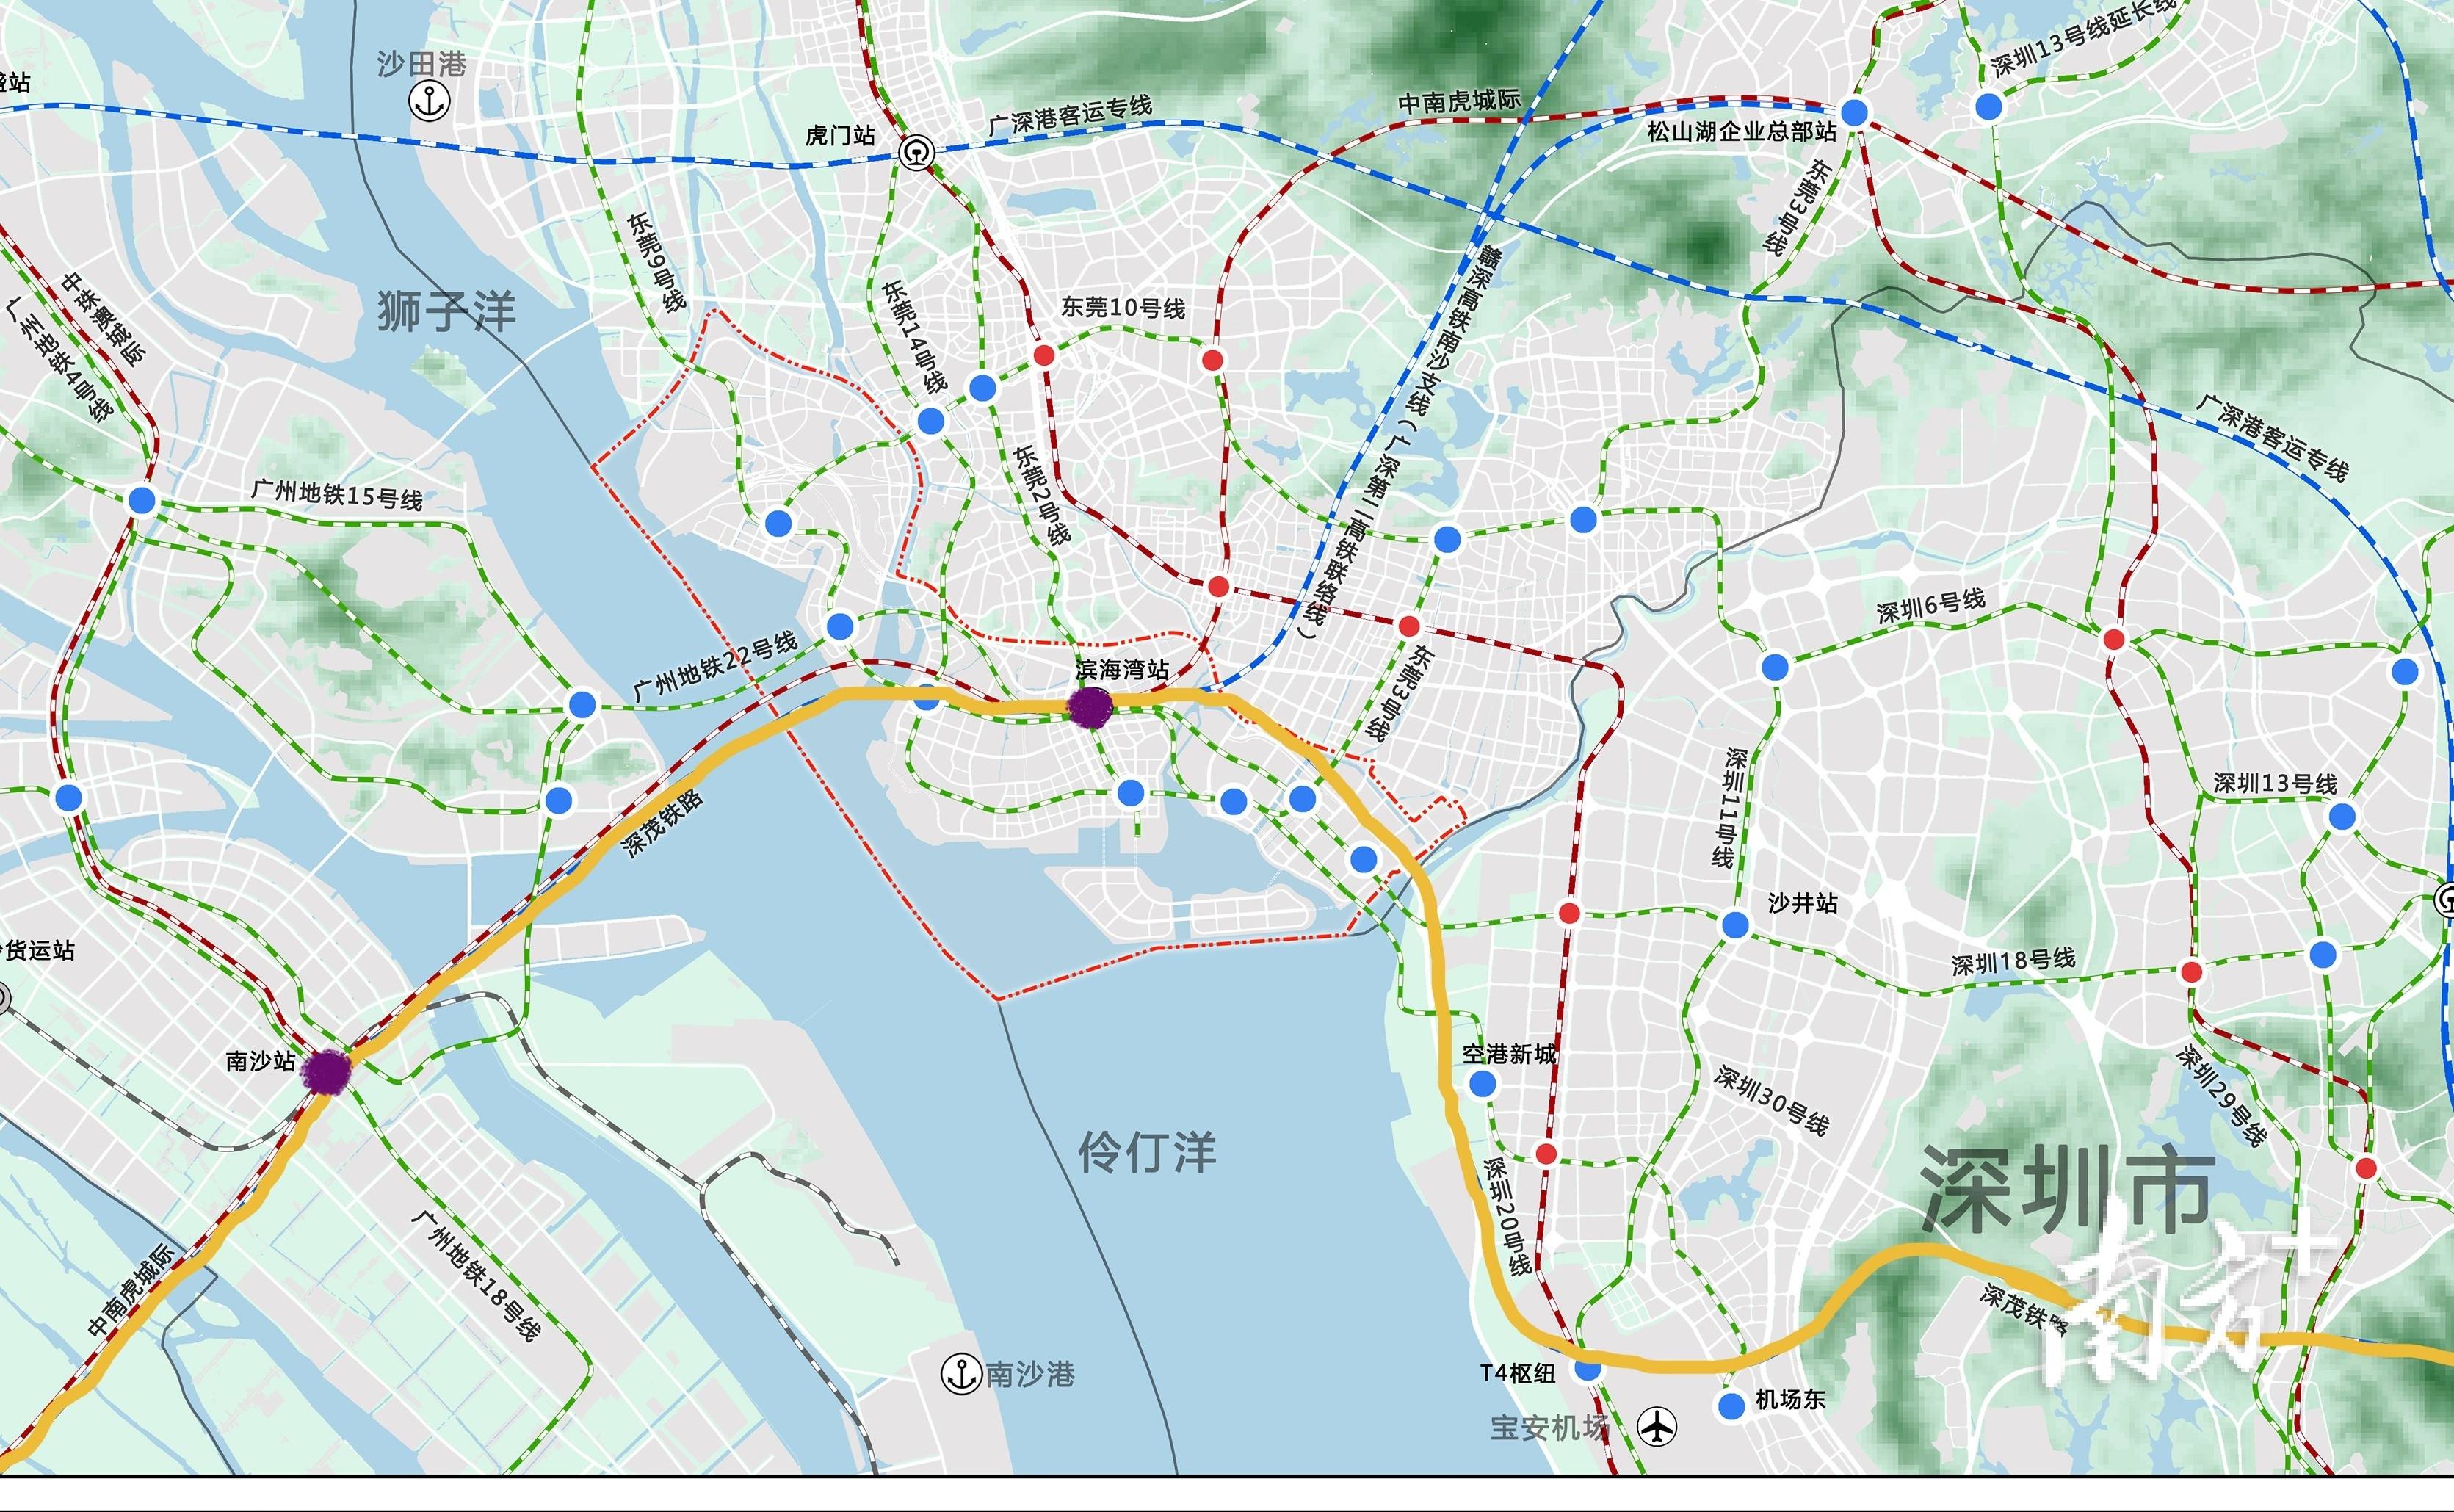 深江铁路是深茂铁路的一部分,全线设西丽(不含,深圳机场,东莞滨海湾